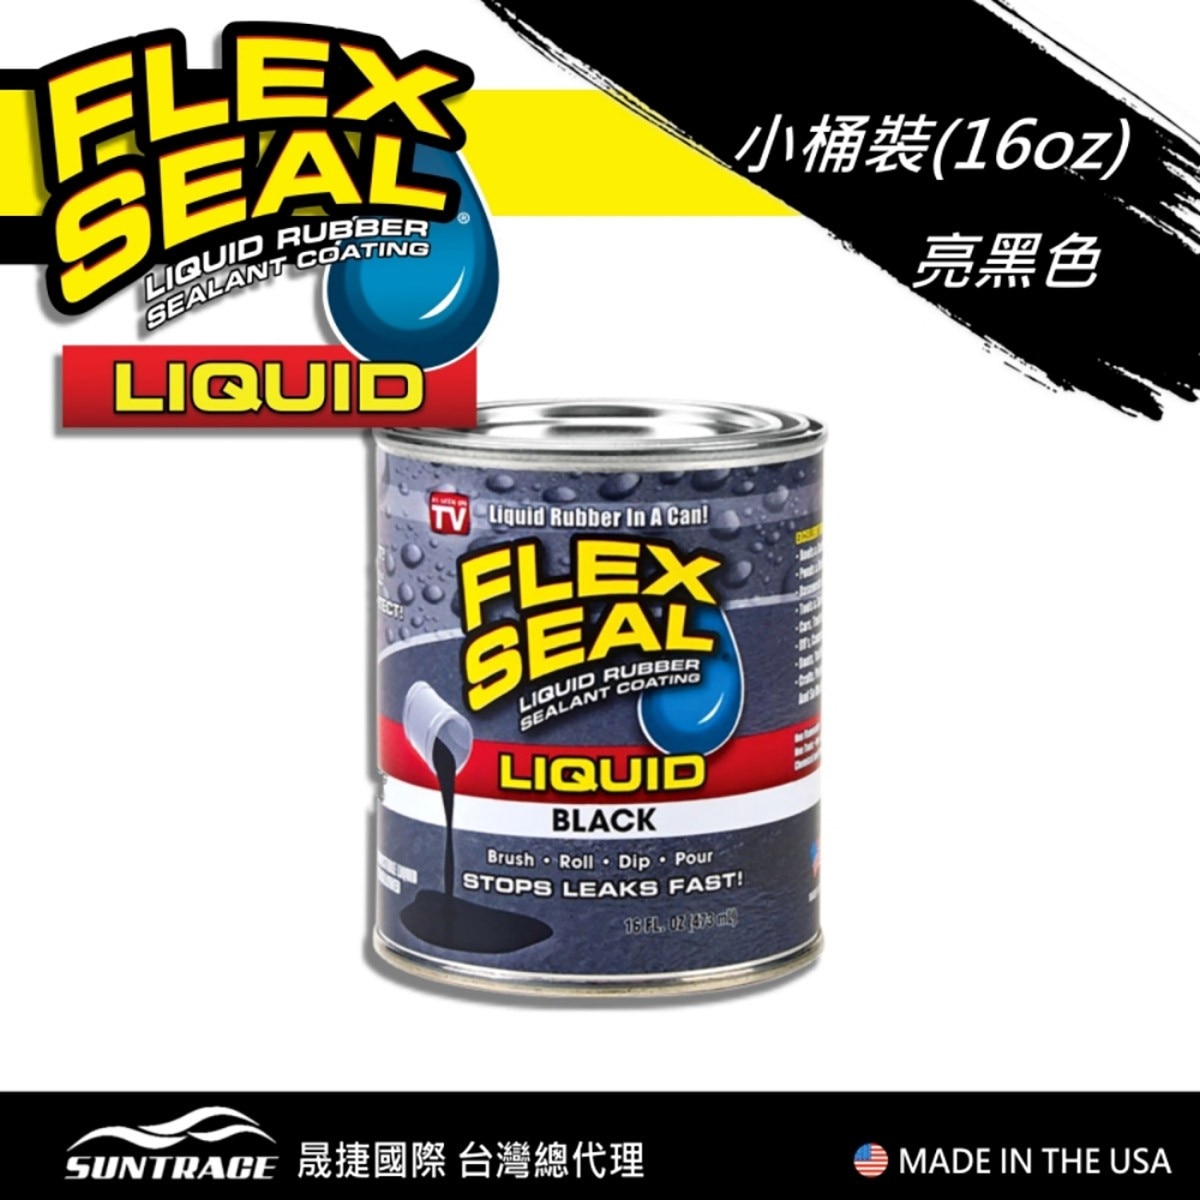 美國製FLEX SEAL LIQUID萬用止漏膠亮黑色，固化乾燥後呈彈性橡膠，富彈性，耐曬抗風化，不變質、不乾裂，止漏膠可滲入縫隙完美填補。